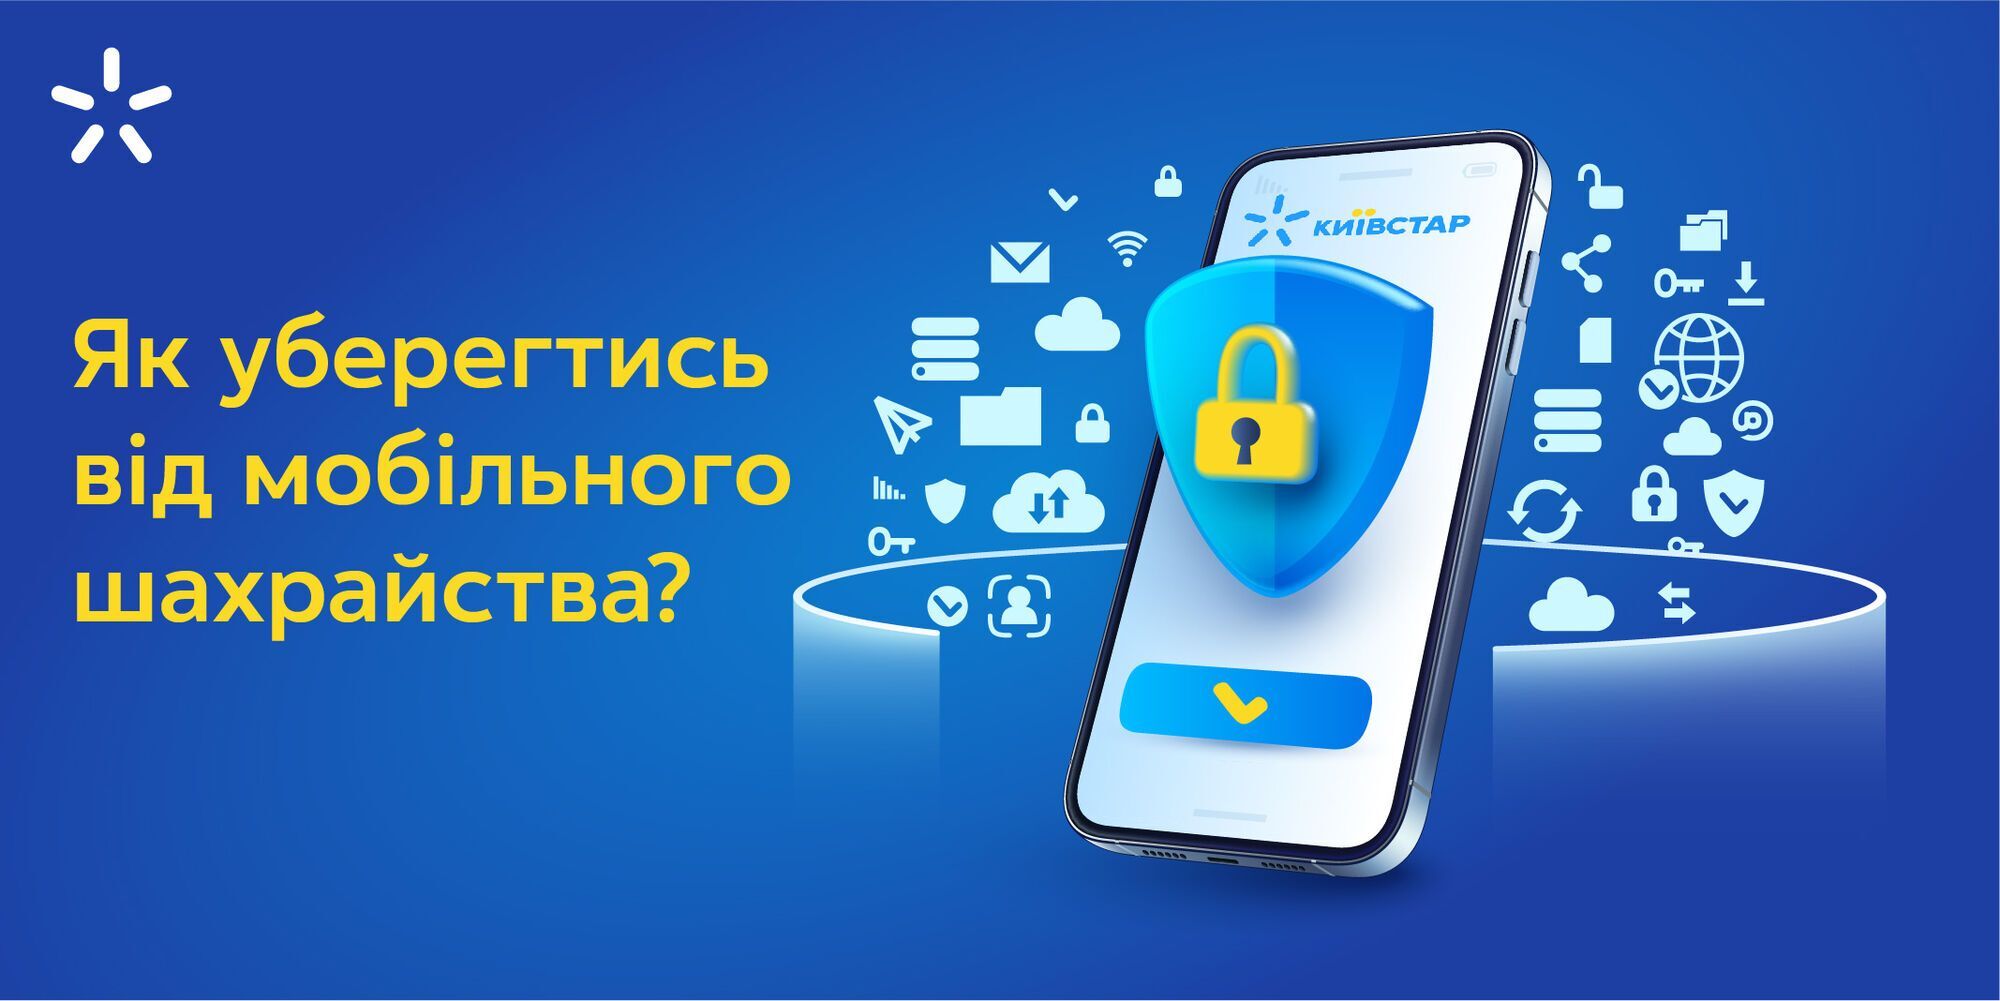 Кибербезопасность и противодействие мошенникам: что важно знать всем украинцам и как защититься бизнесу